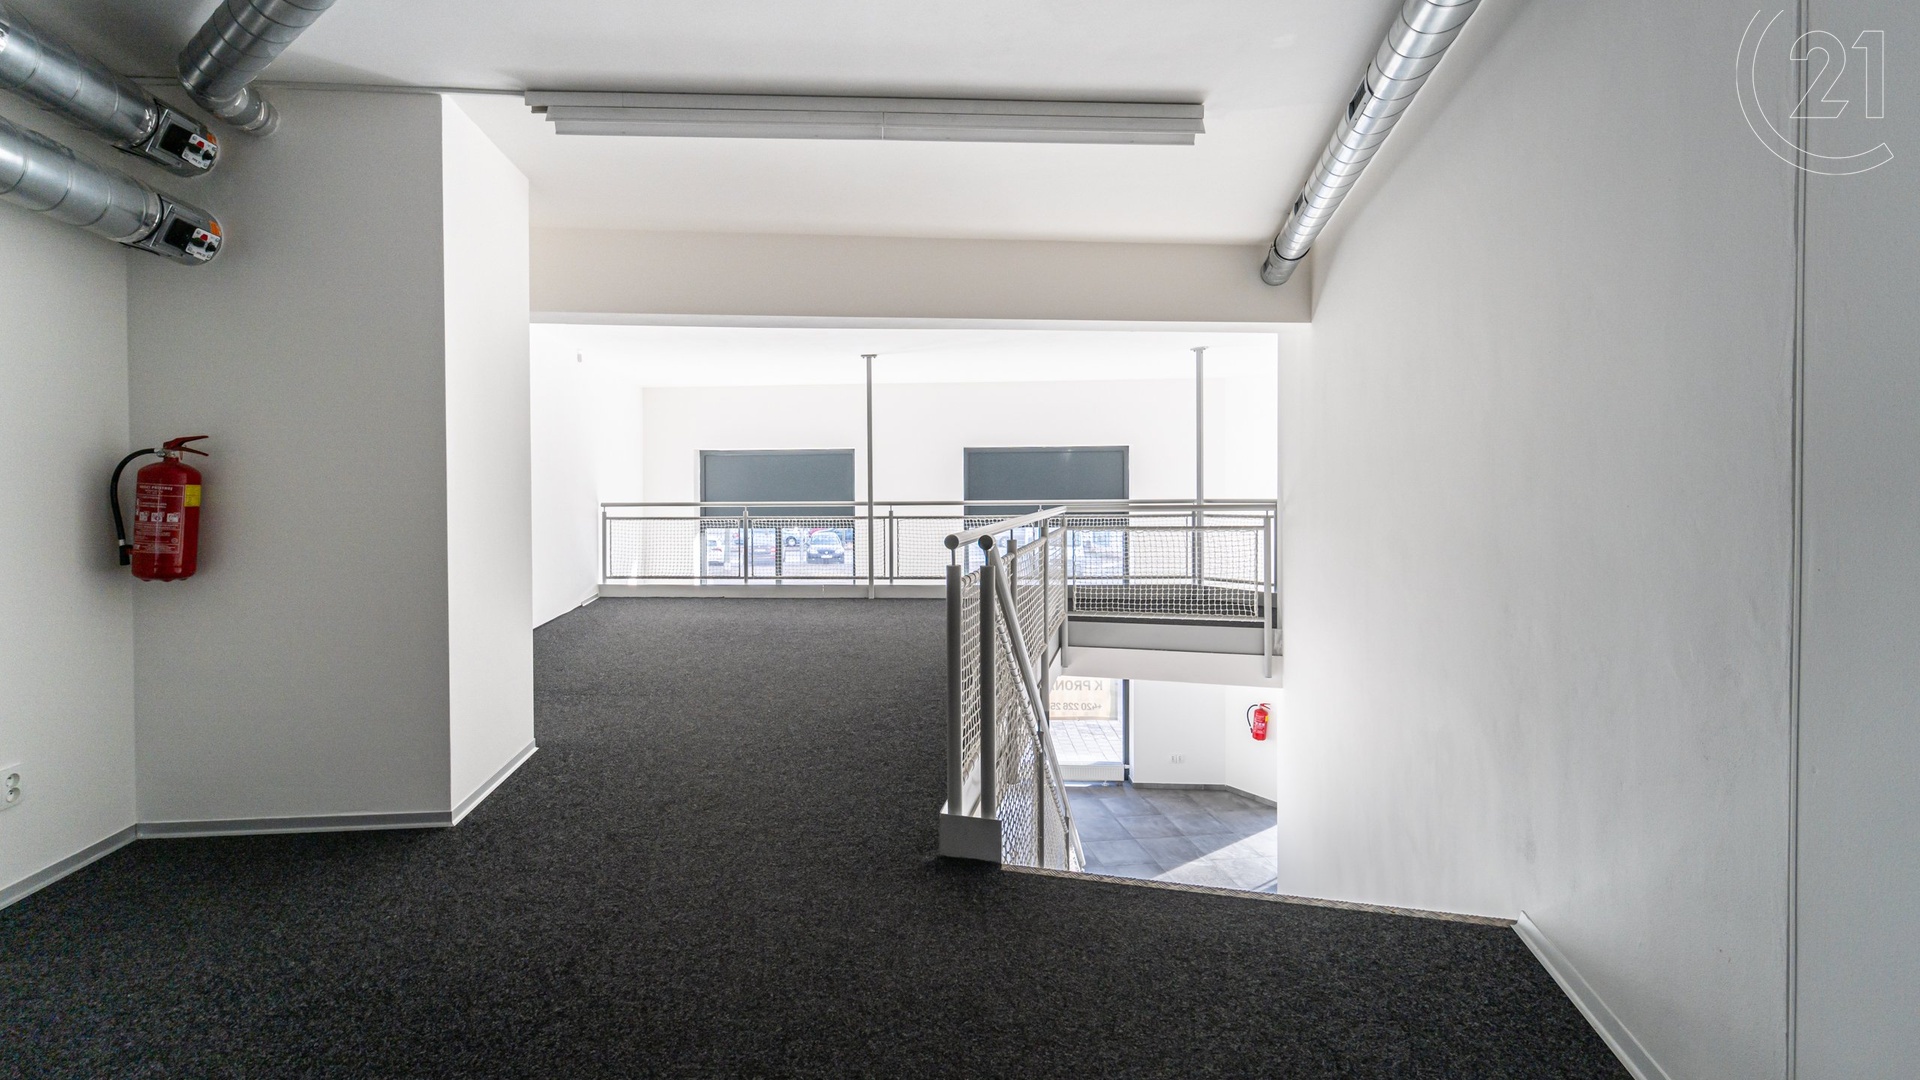 Kancelářské prostory ke koupi o celkové ploše 232m2 v rohovém domě na frekventované ulici Mlýnská v Brně